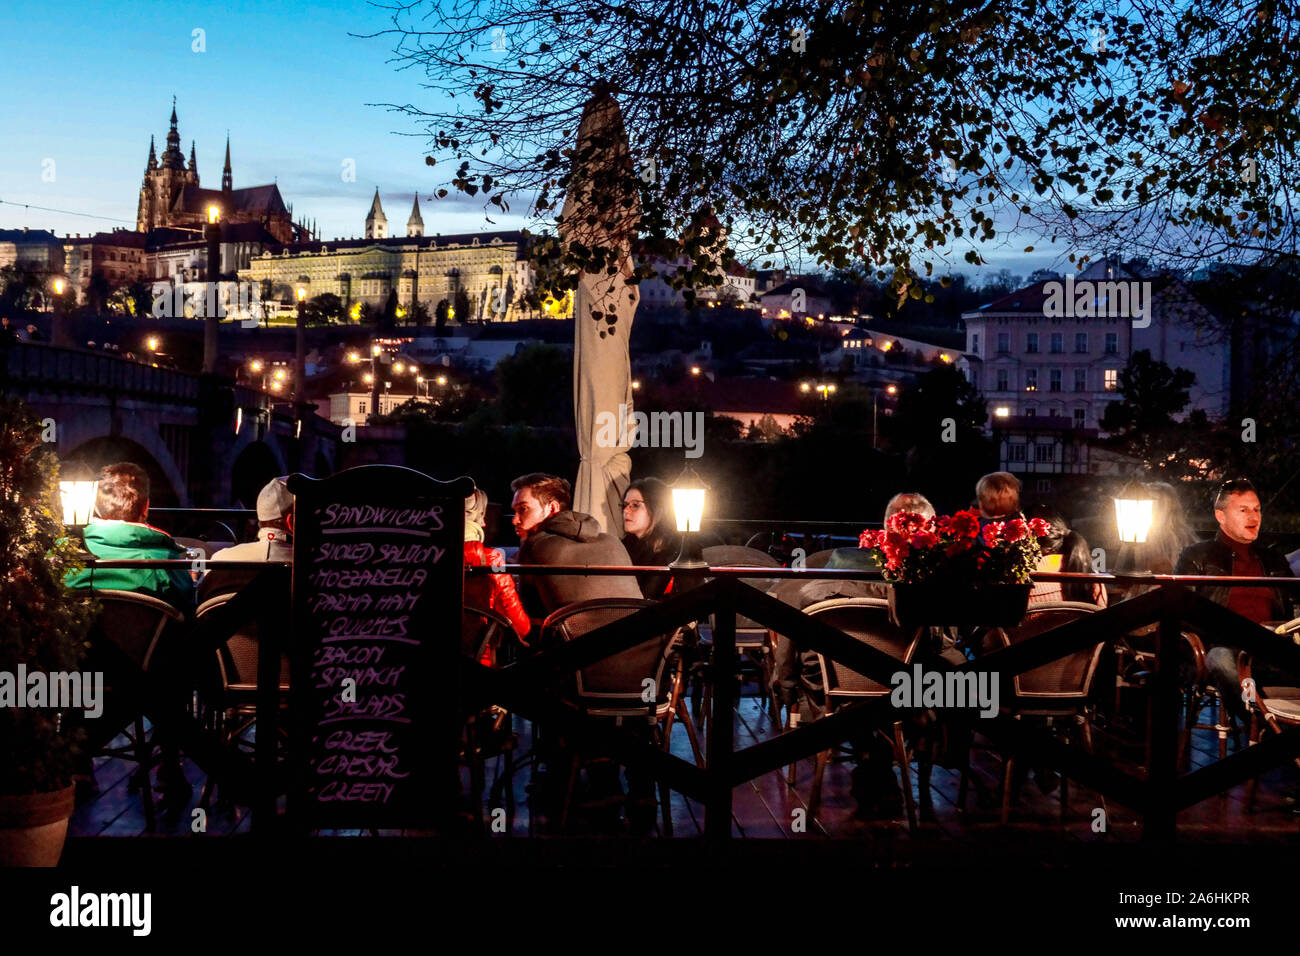 Prague gens dans un bar au bord de la rivière Vltava, Restaurant, touristes surplombant le château de Prague nuit Château de Prague vue ambiance du soir Banque D'Images